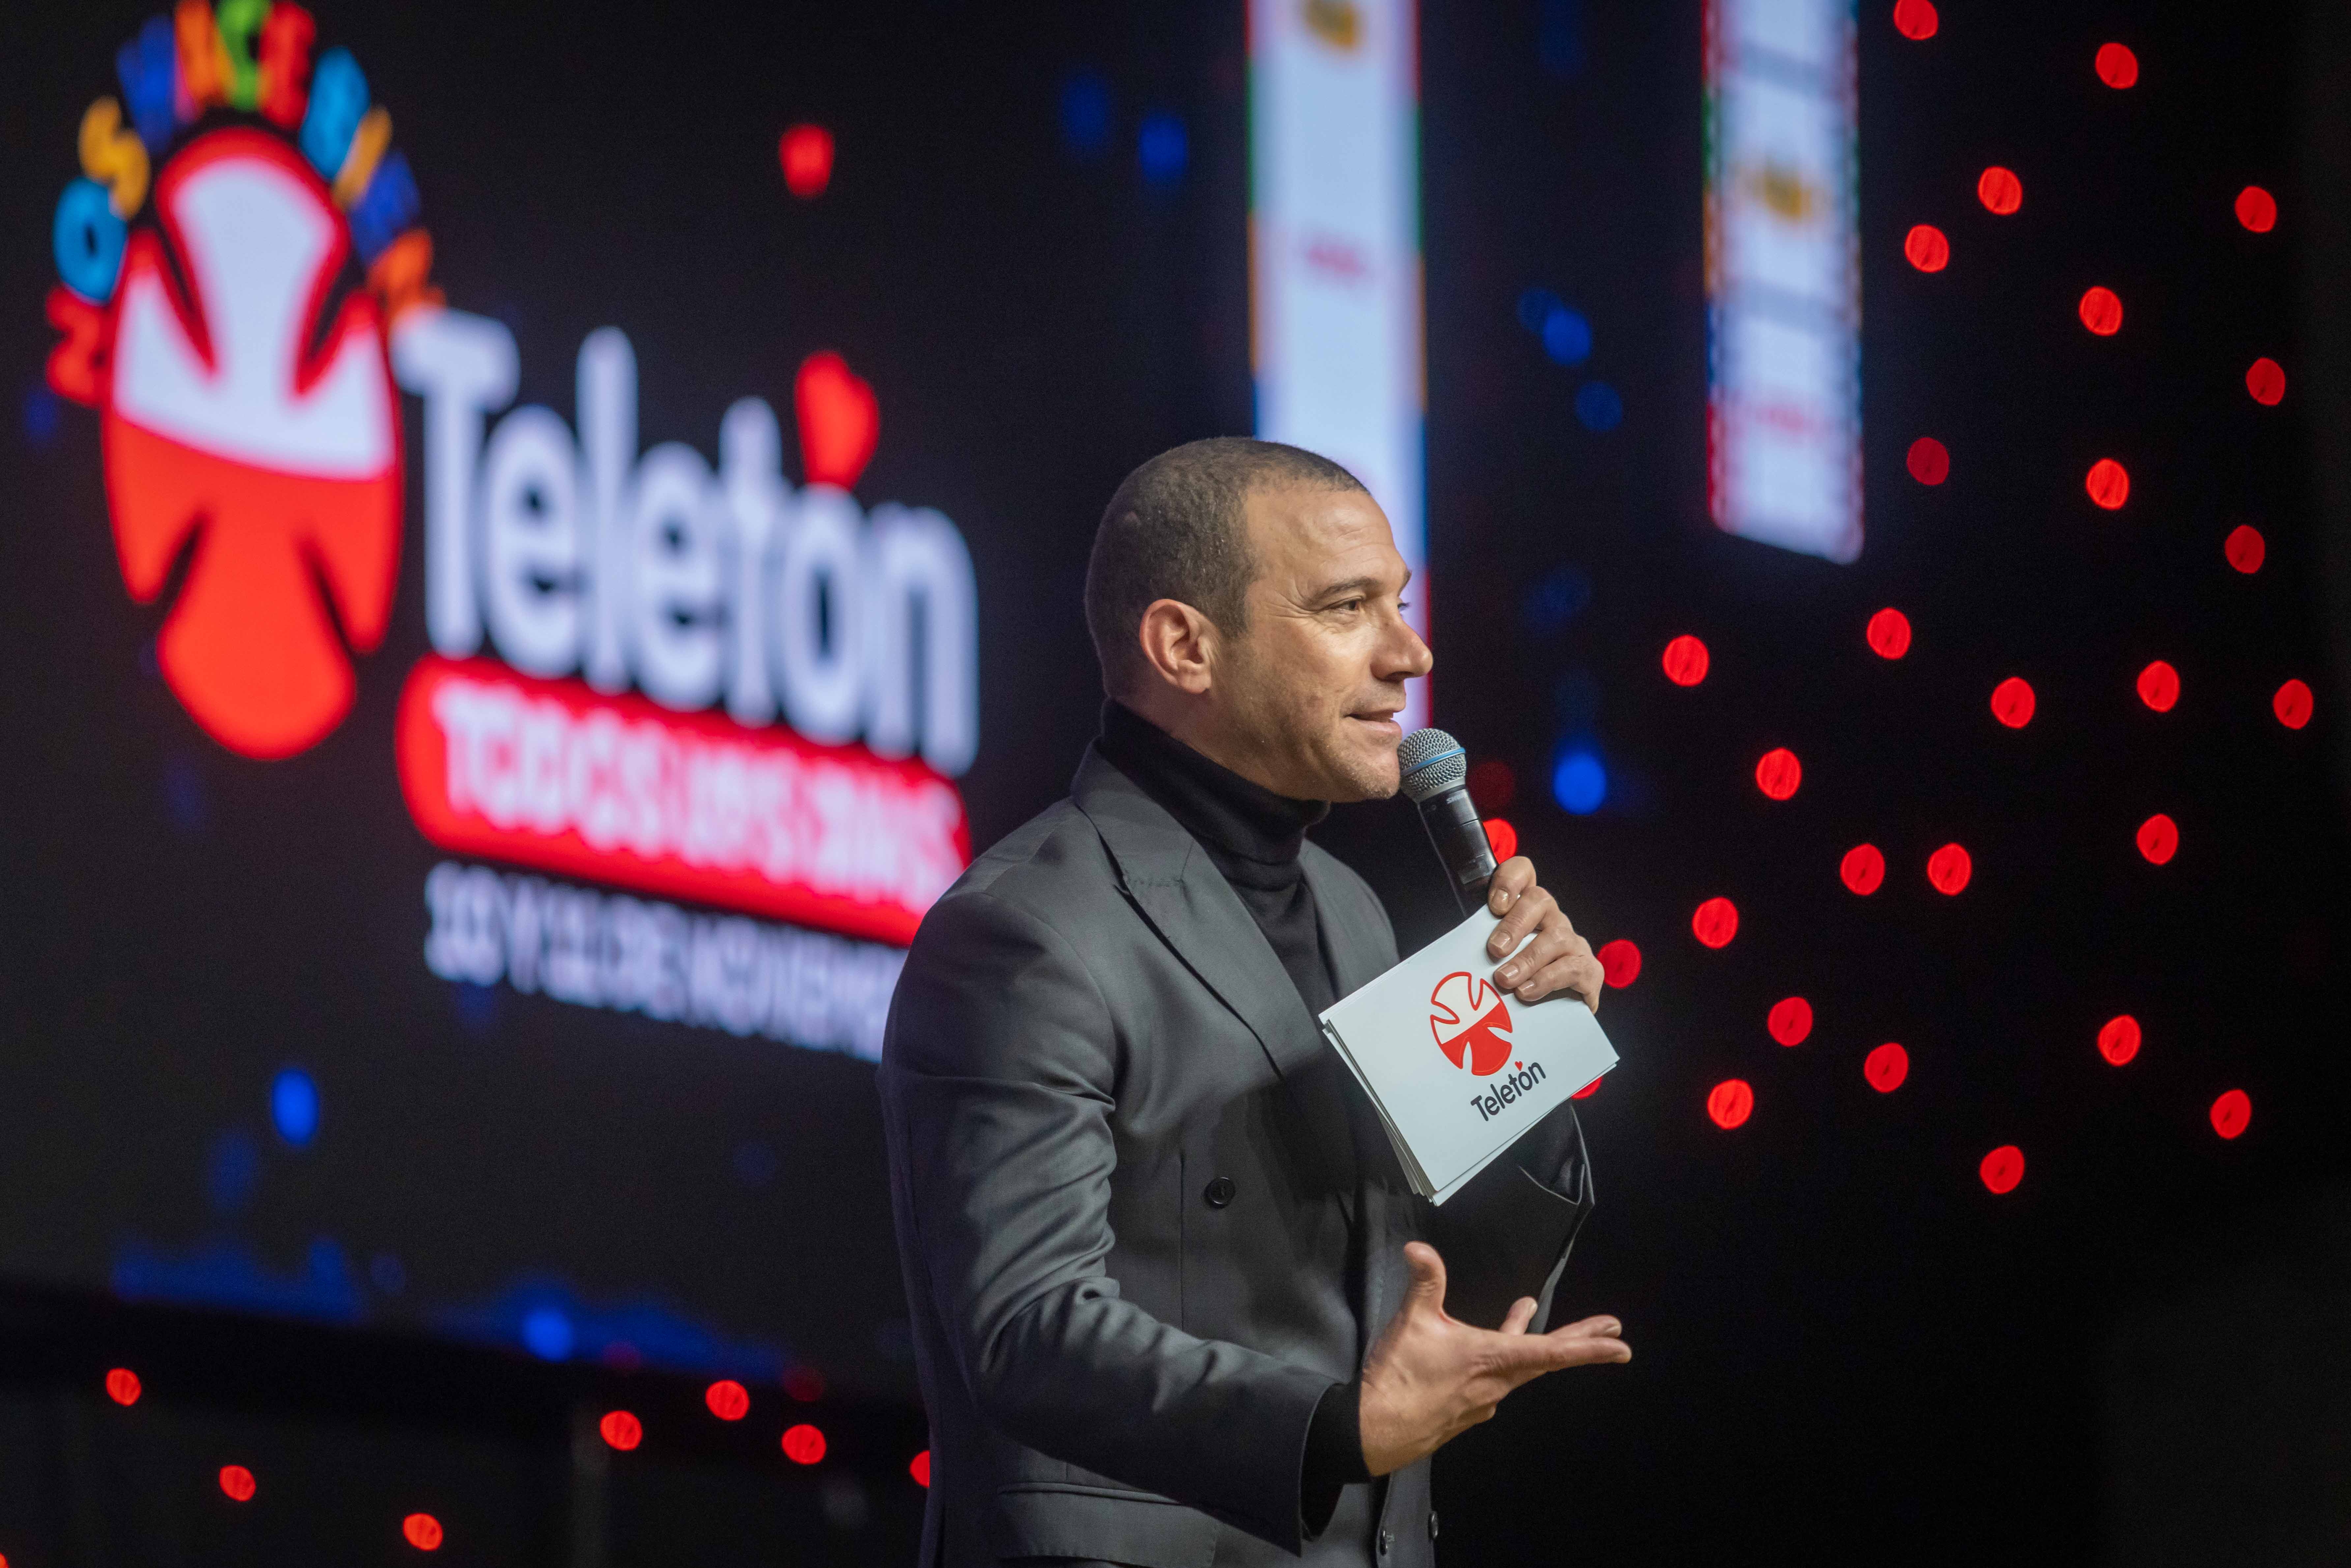 Teletón premia a los mejores anuncios publicitarios de la campaña 2022